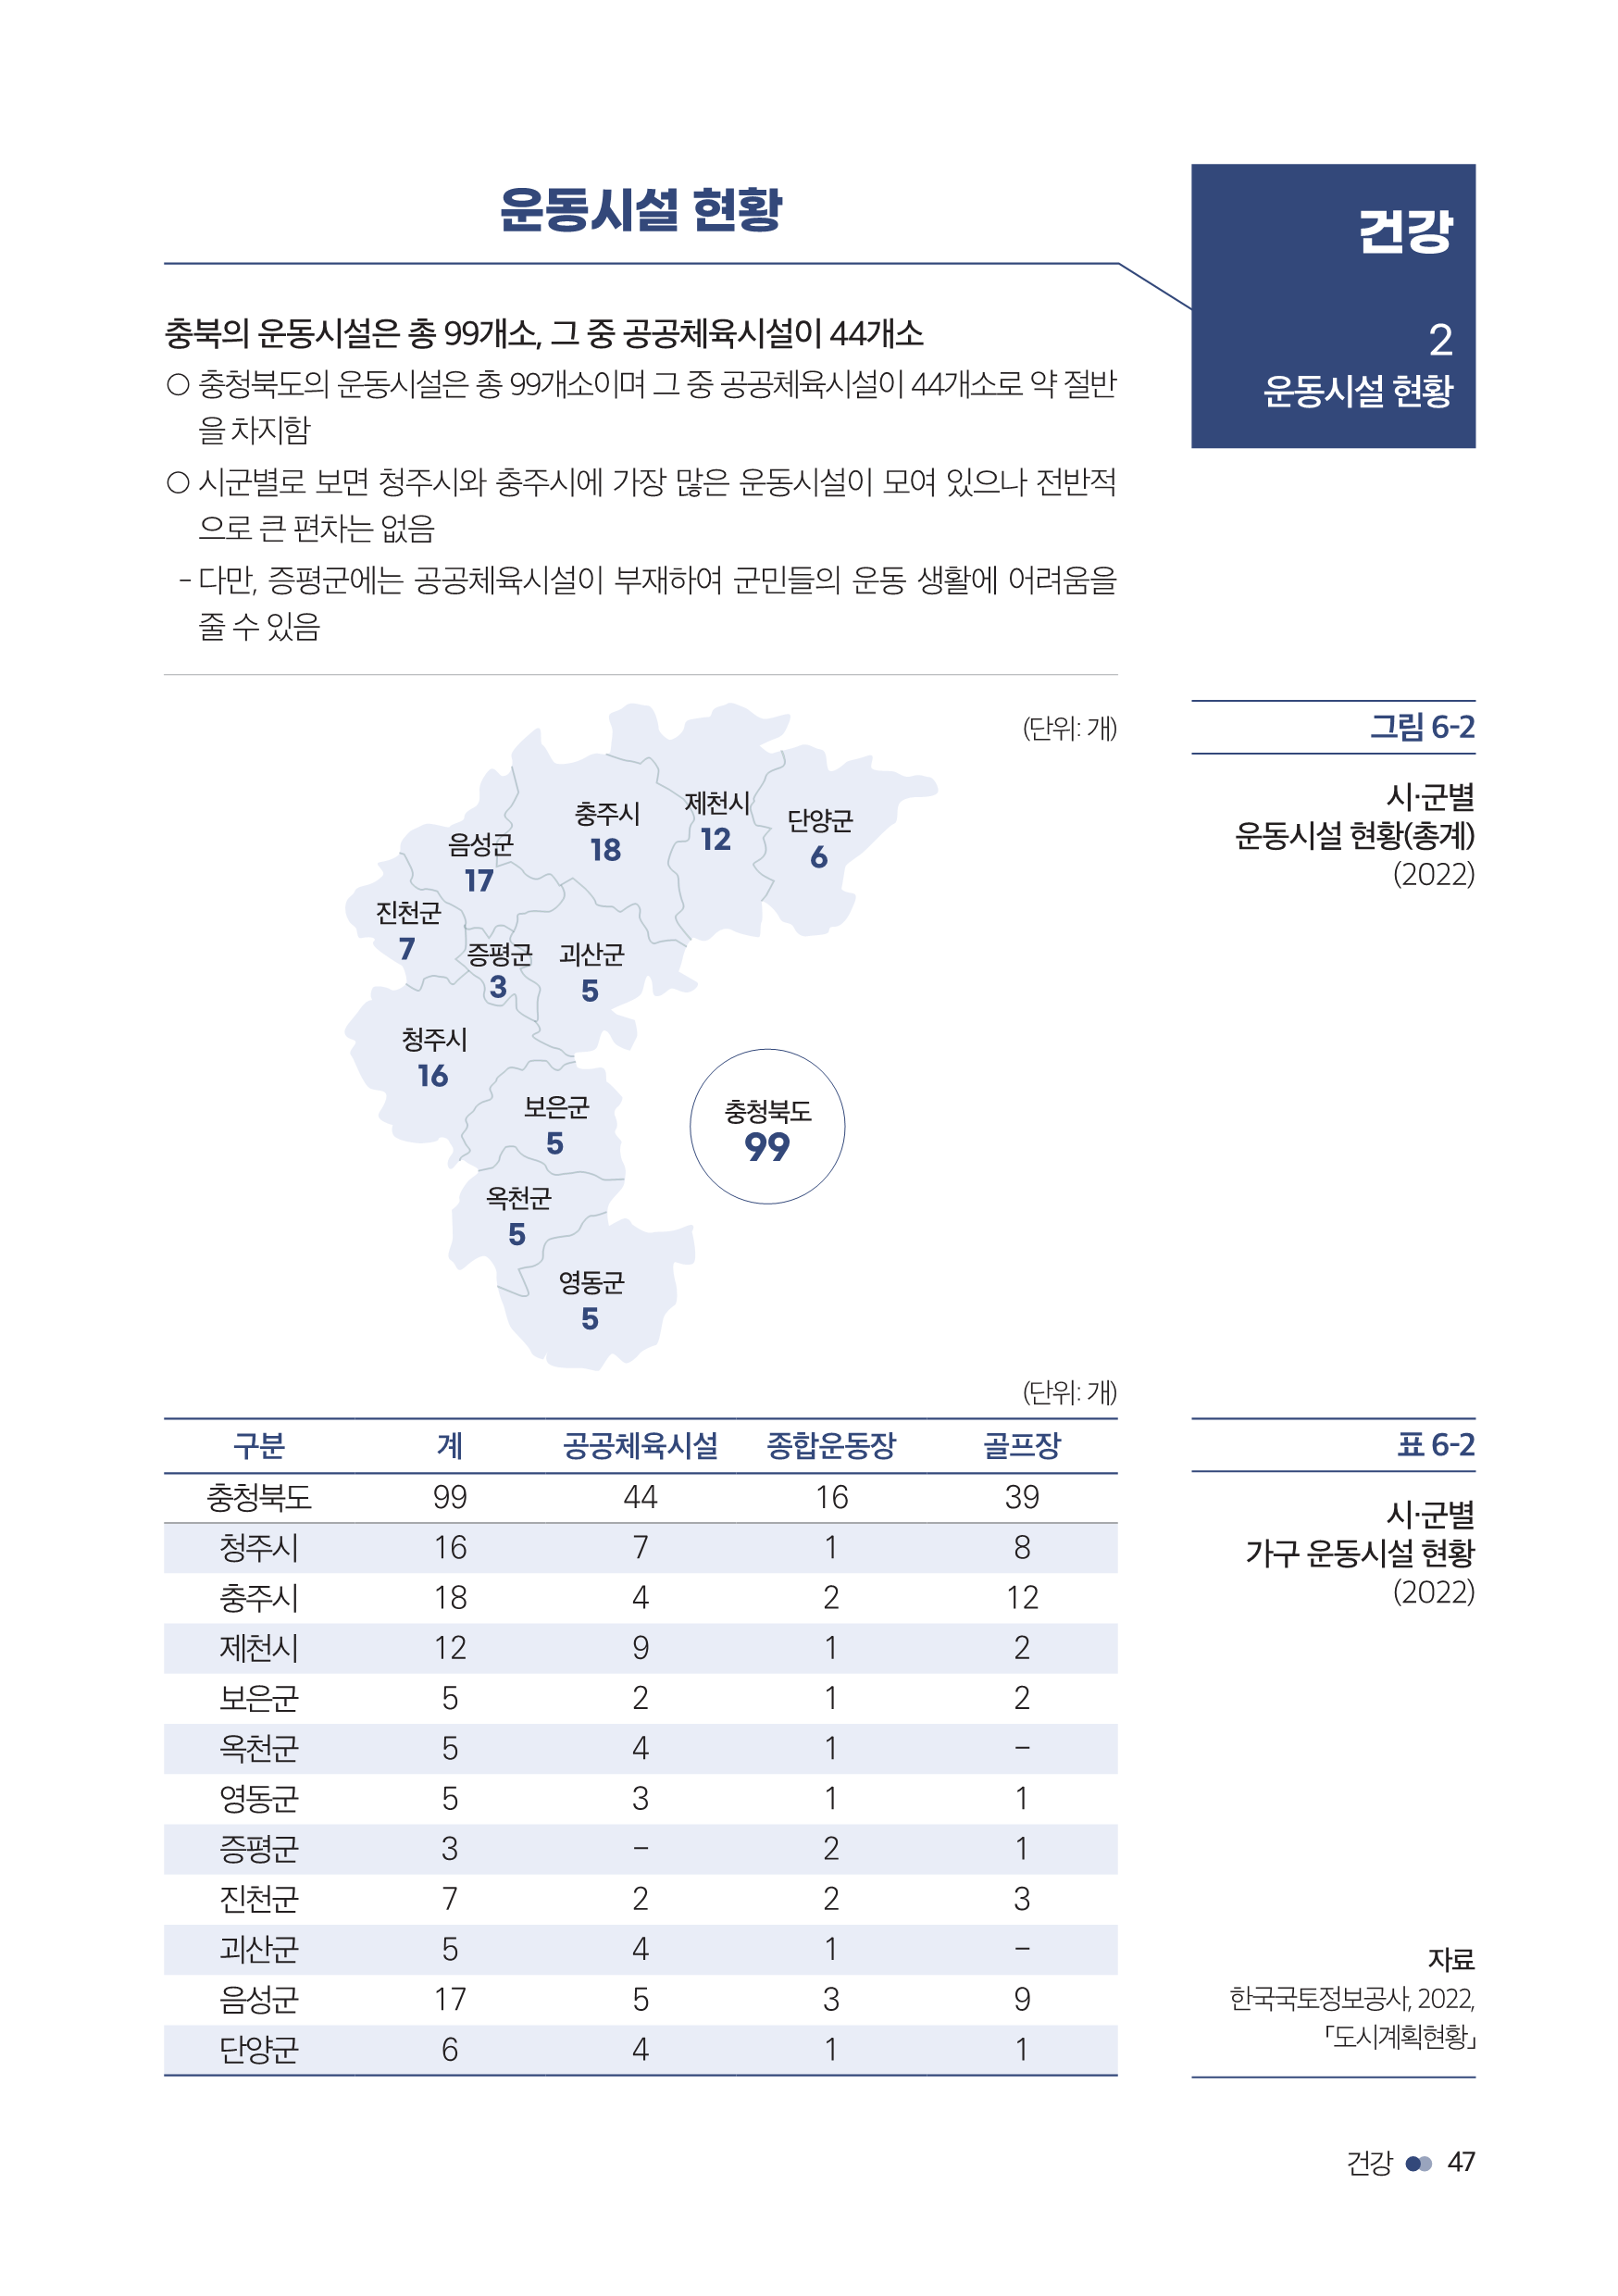 충북여성재단-성인지통계(인포)_웹용_49.png